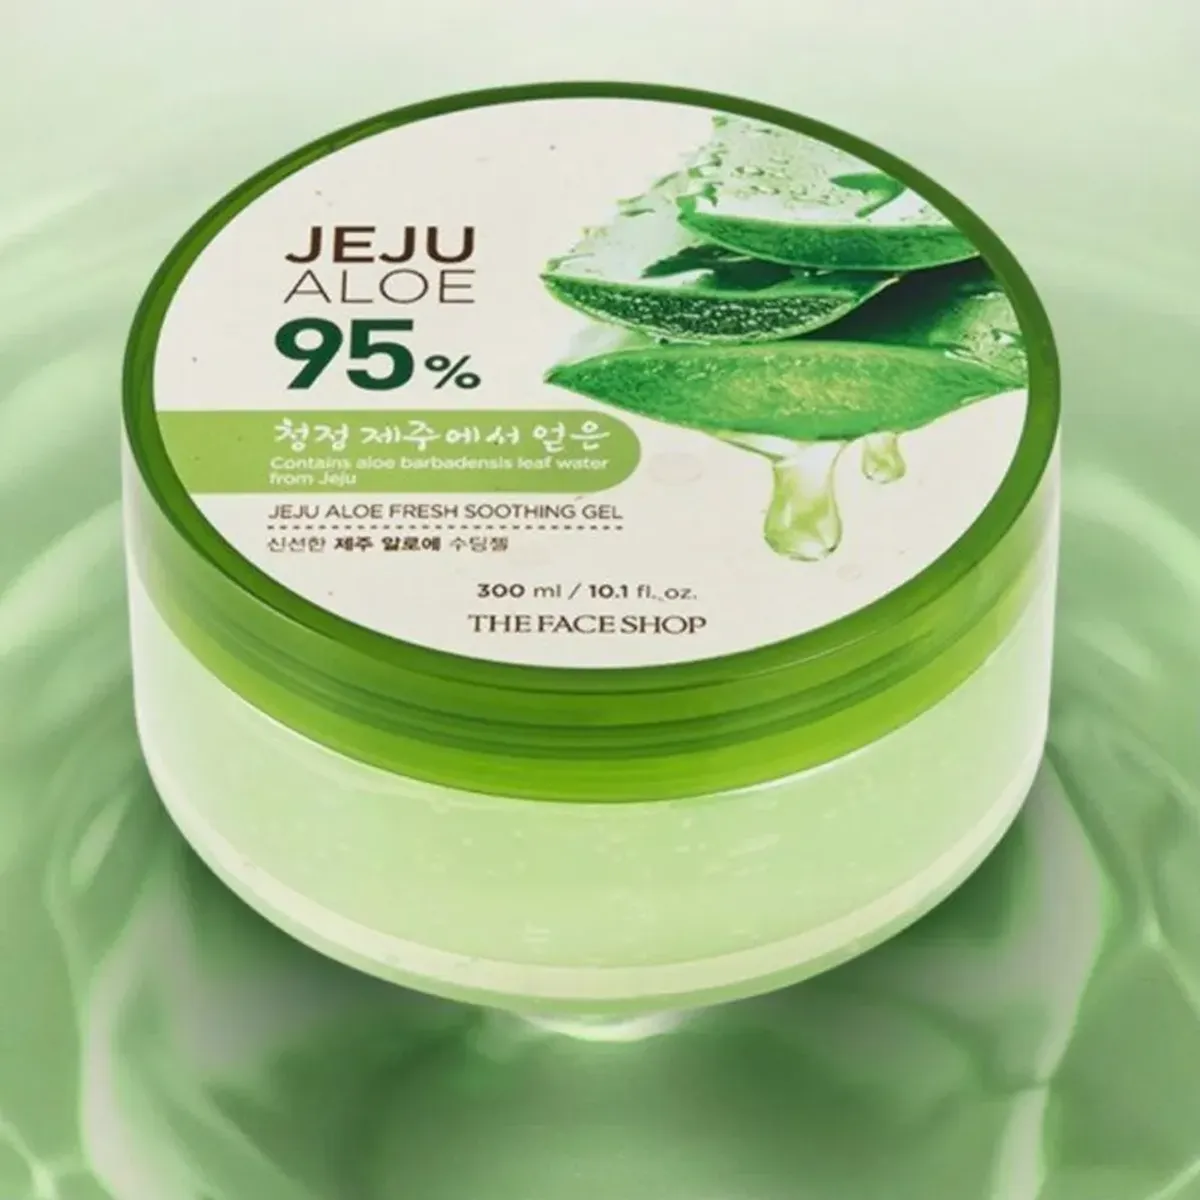 gel-duong-da-da-nang-jeju-aloe-fresh-soothing-gel-300ml-4